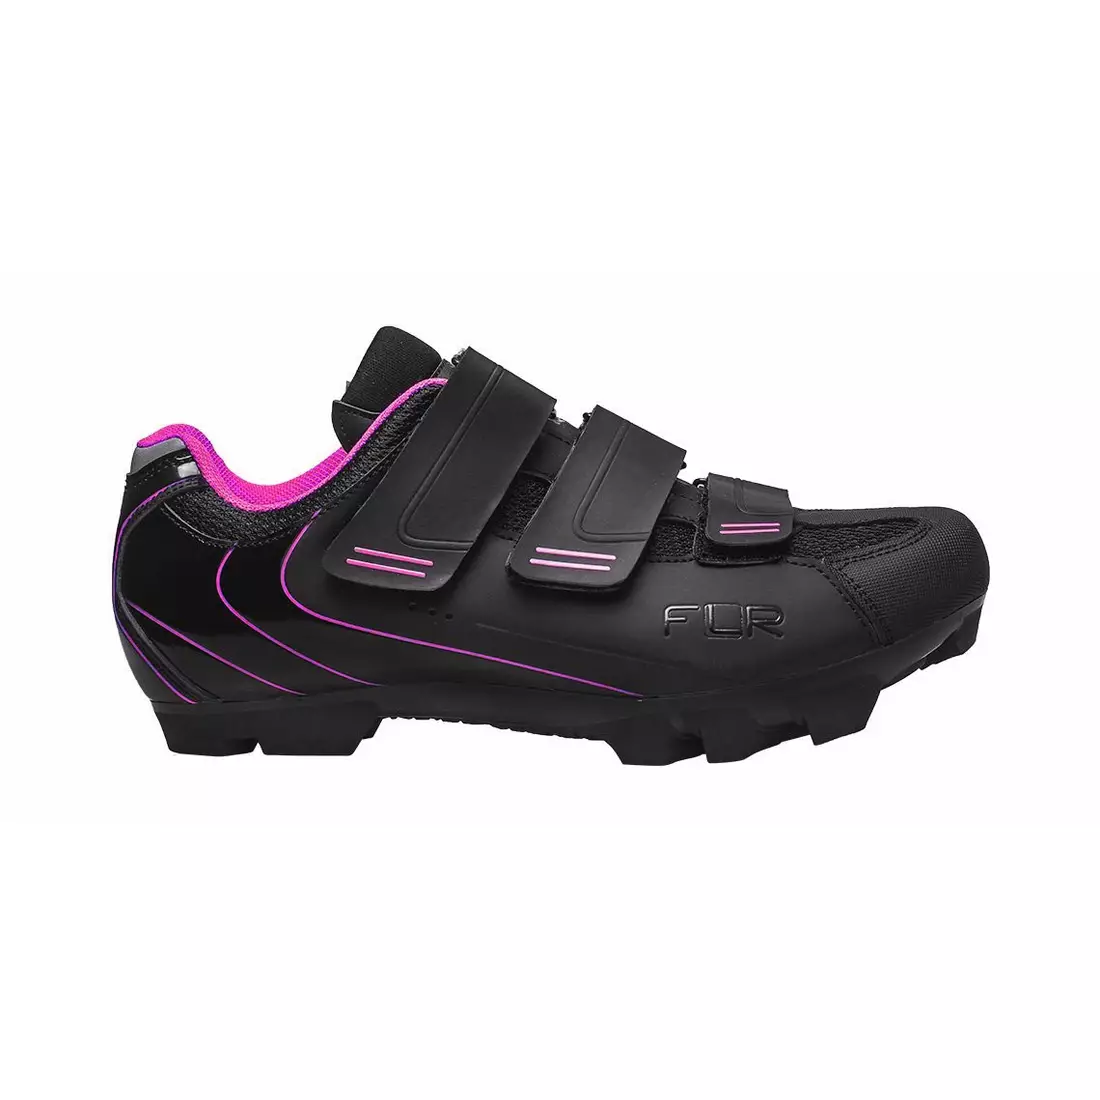 FLR F-55 Women's MTB cycling shoes black/pink